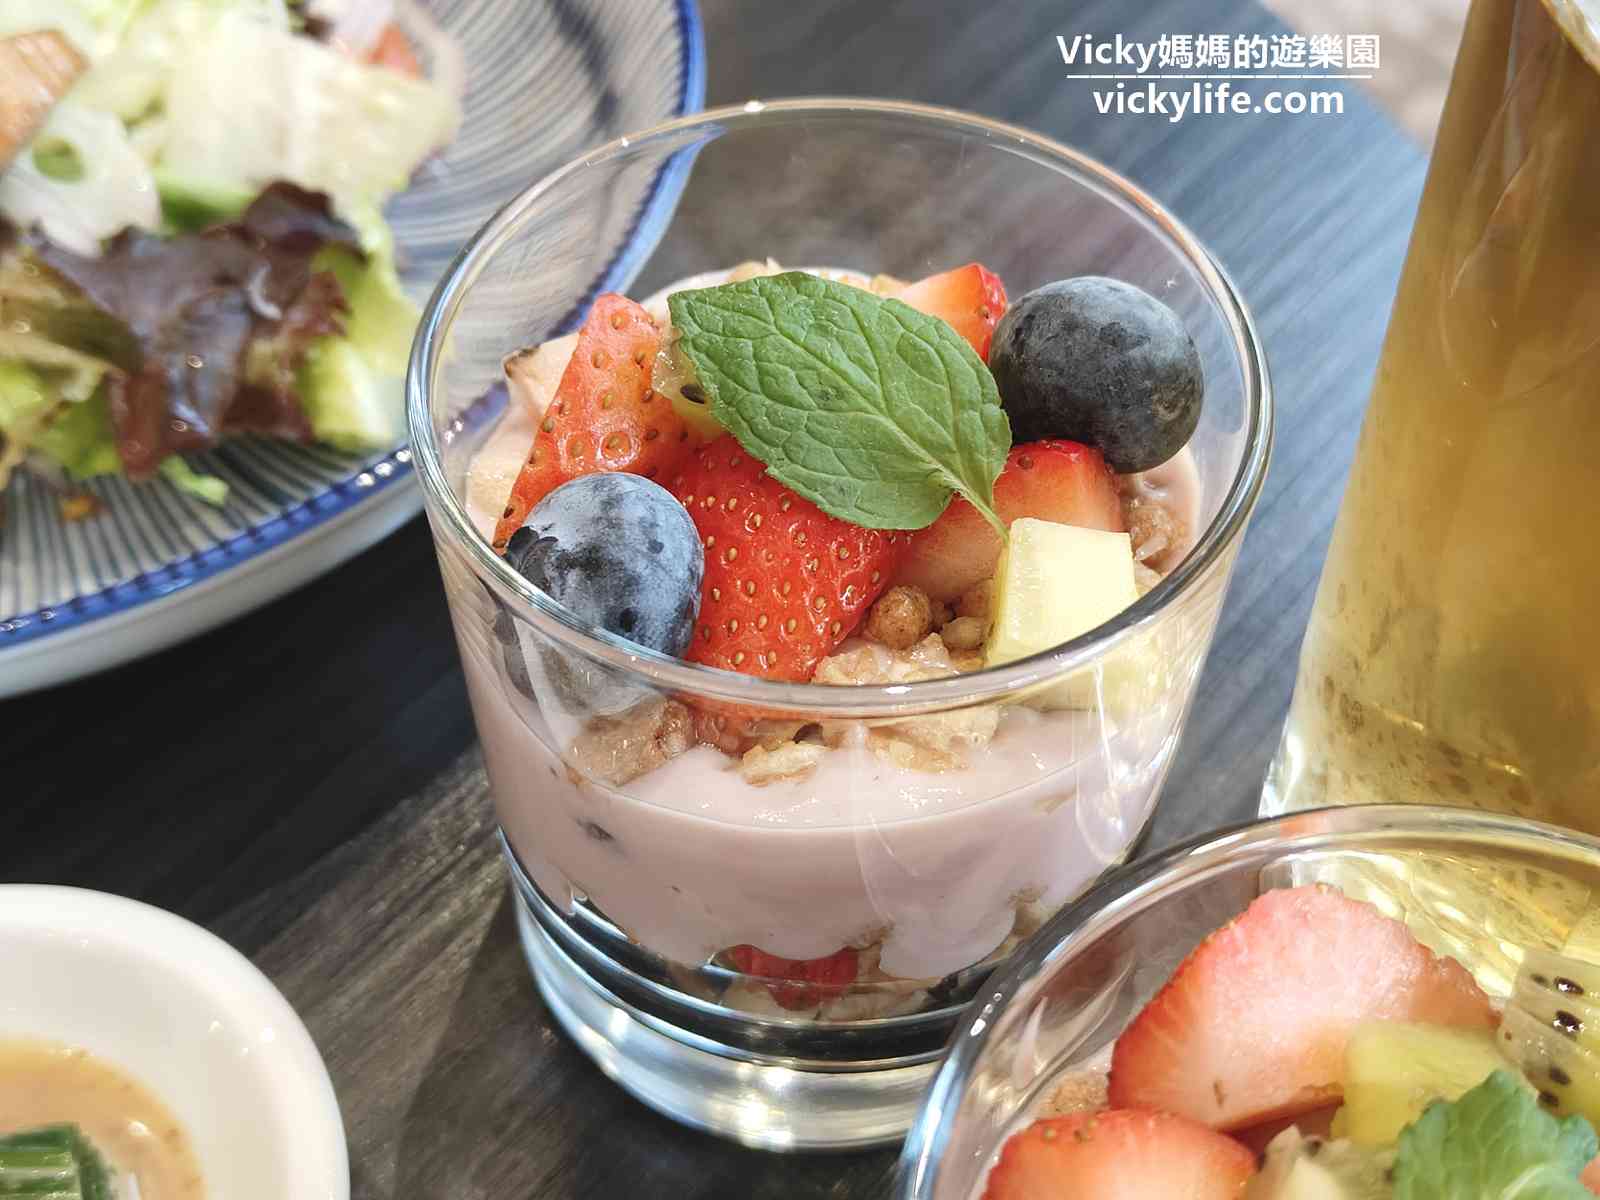 台南早午餐︱台糖長榮酒店早午餐(菜單)：這是我吃過最豐盛的早午餐，根本是西式套餐來著